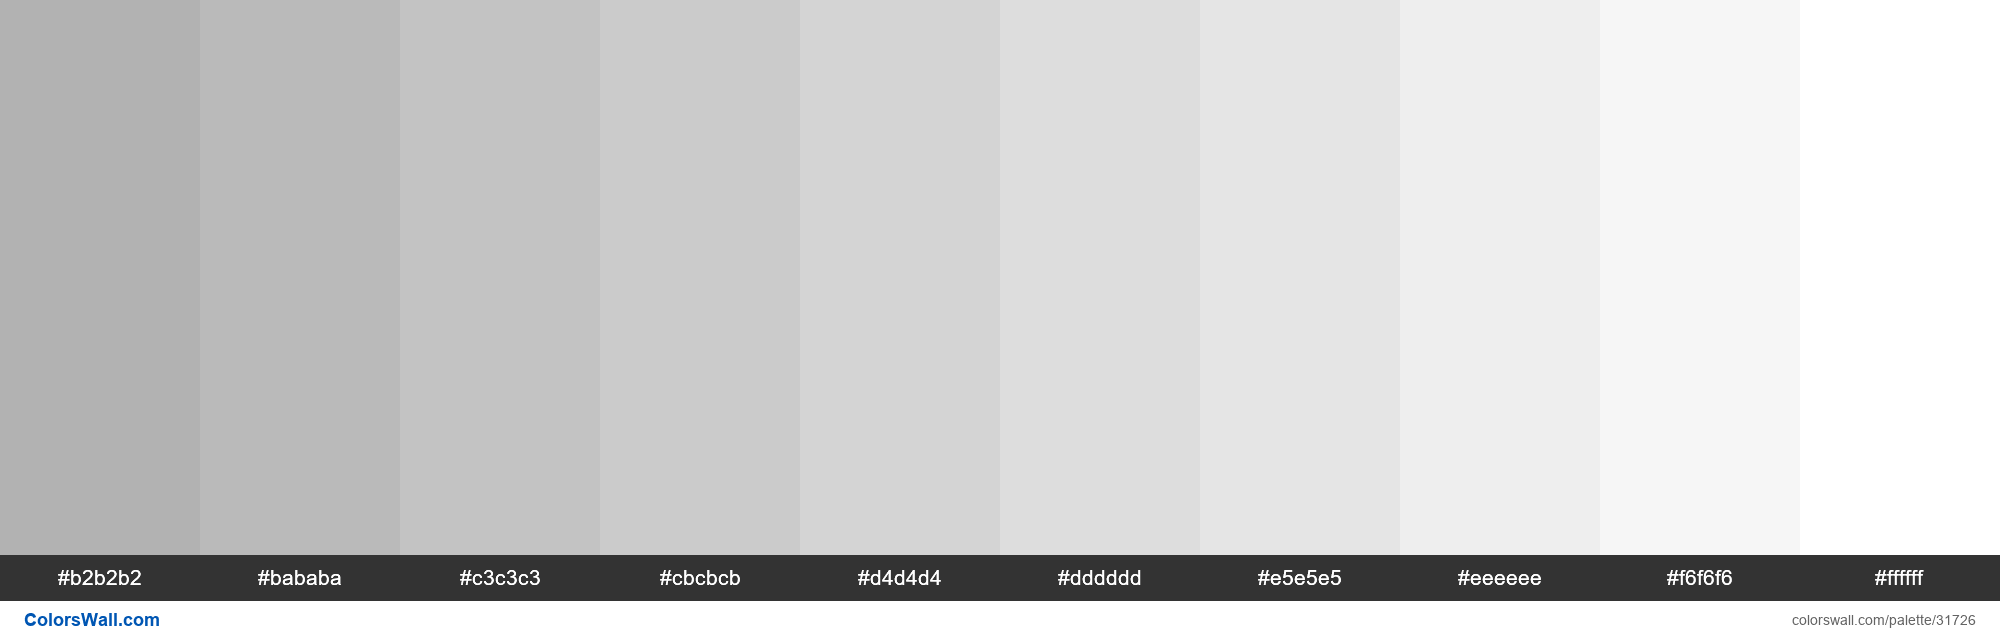 Tints X11 color Dark Gray #A9A9A9 hex - #31726